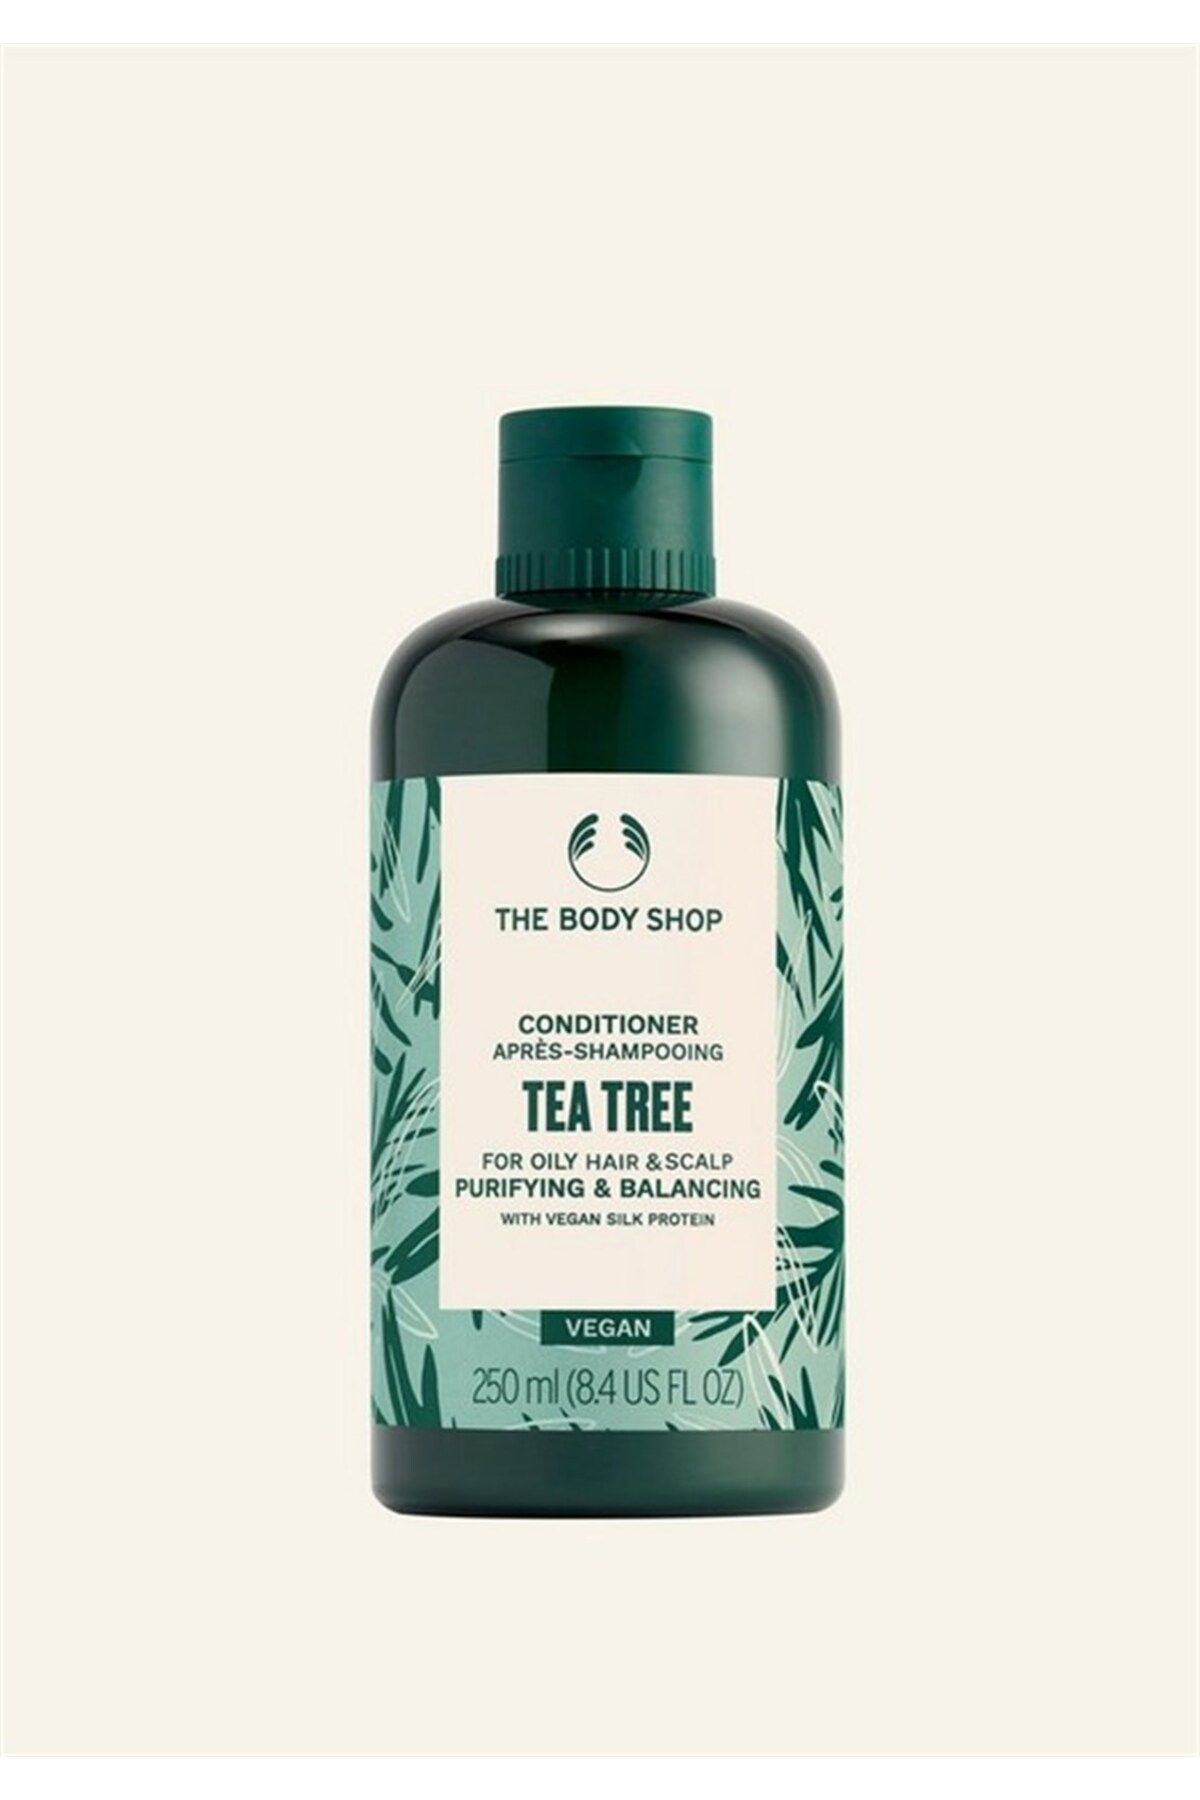 THE BODY SHOP Çay Ağacı Tea Tree Yağlı Saçlara Özel Saç Kremi 250ml